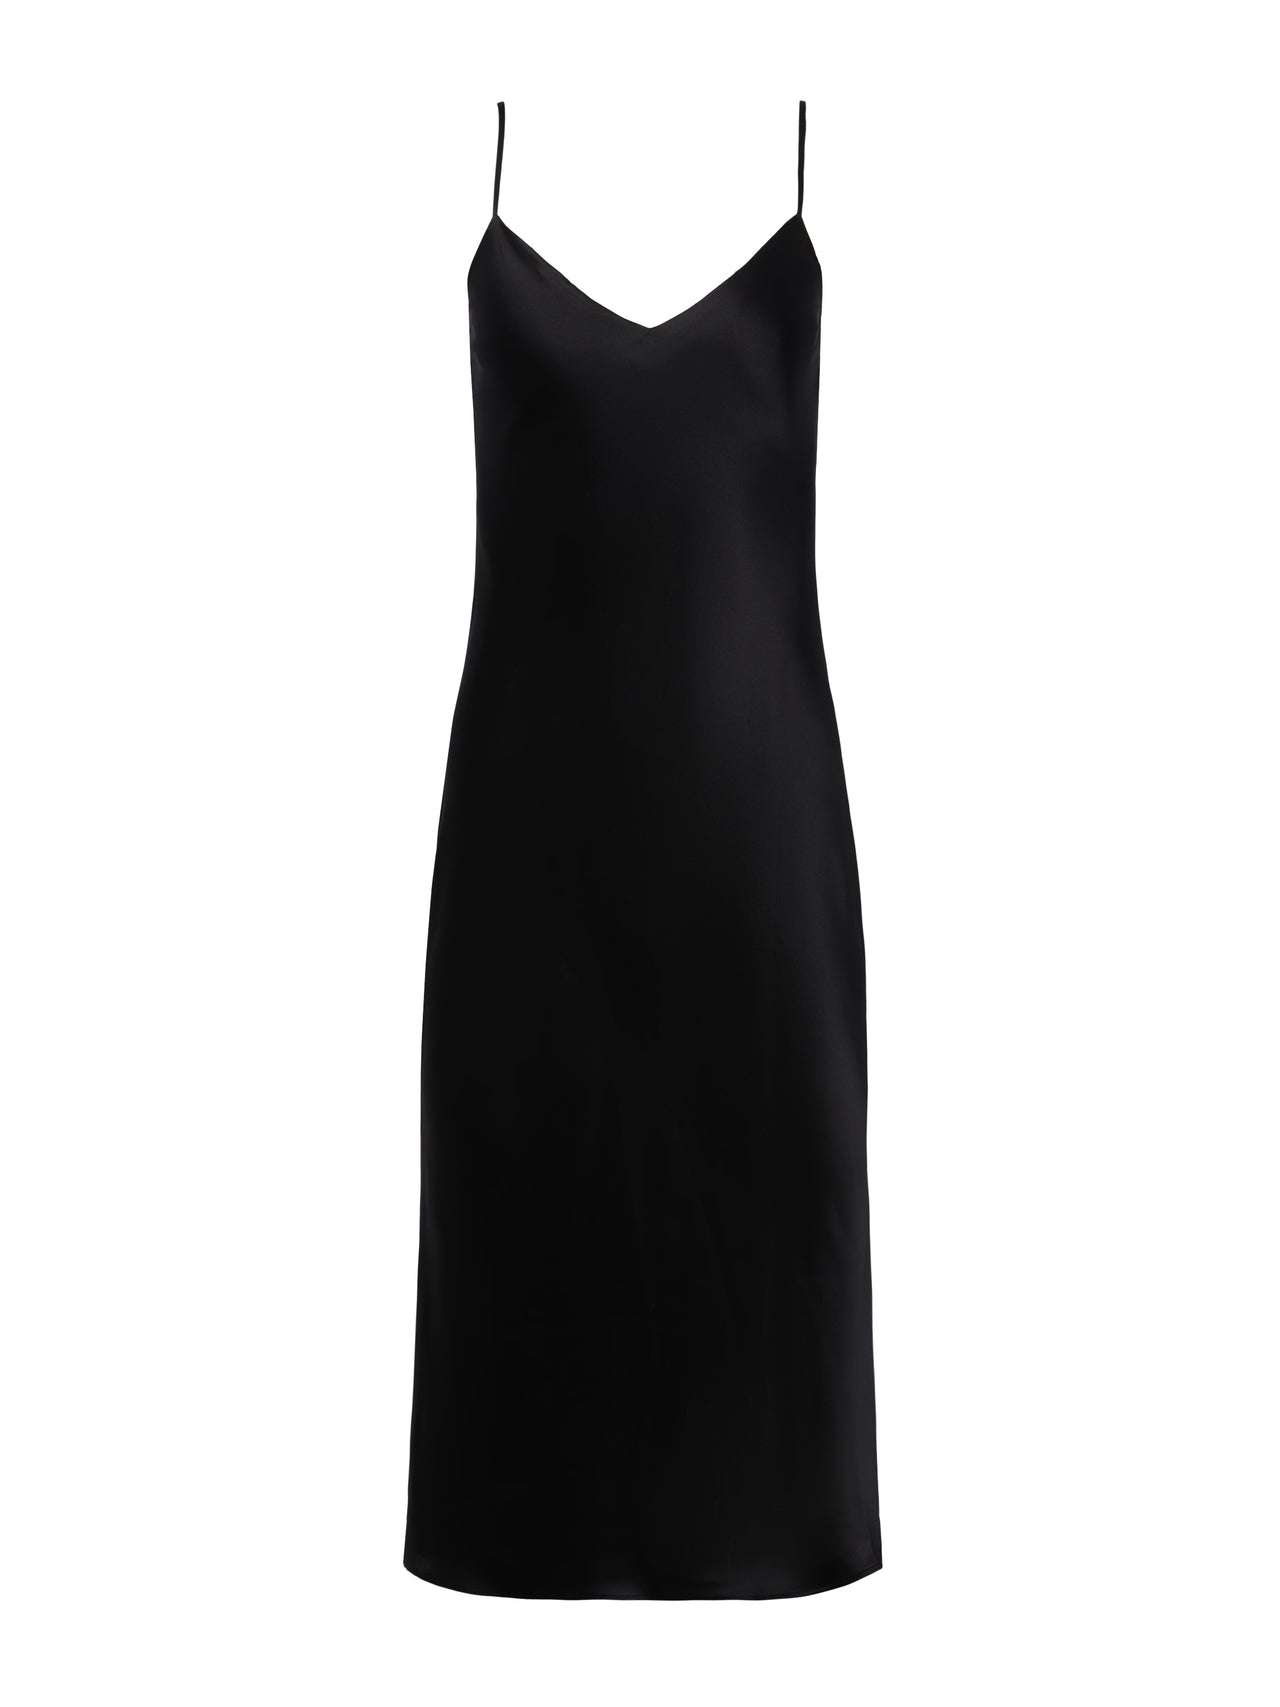 L'AGENCE Jodie V-Neck Silk Slip Dress in Black Charmeuse